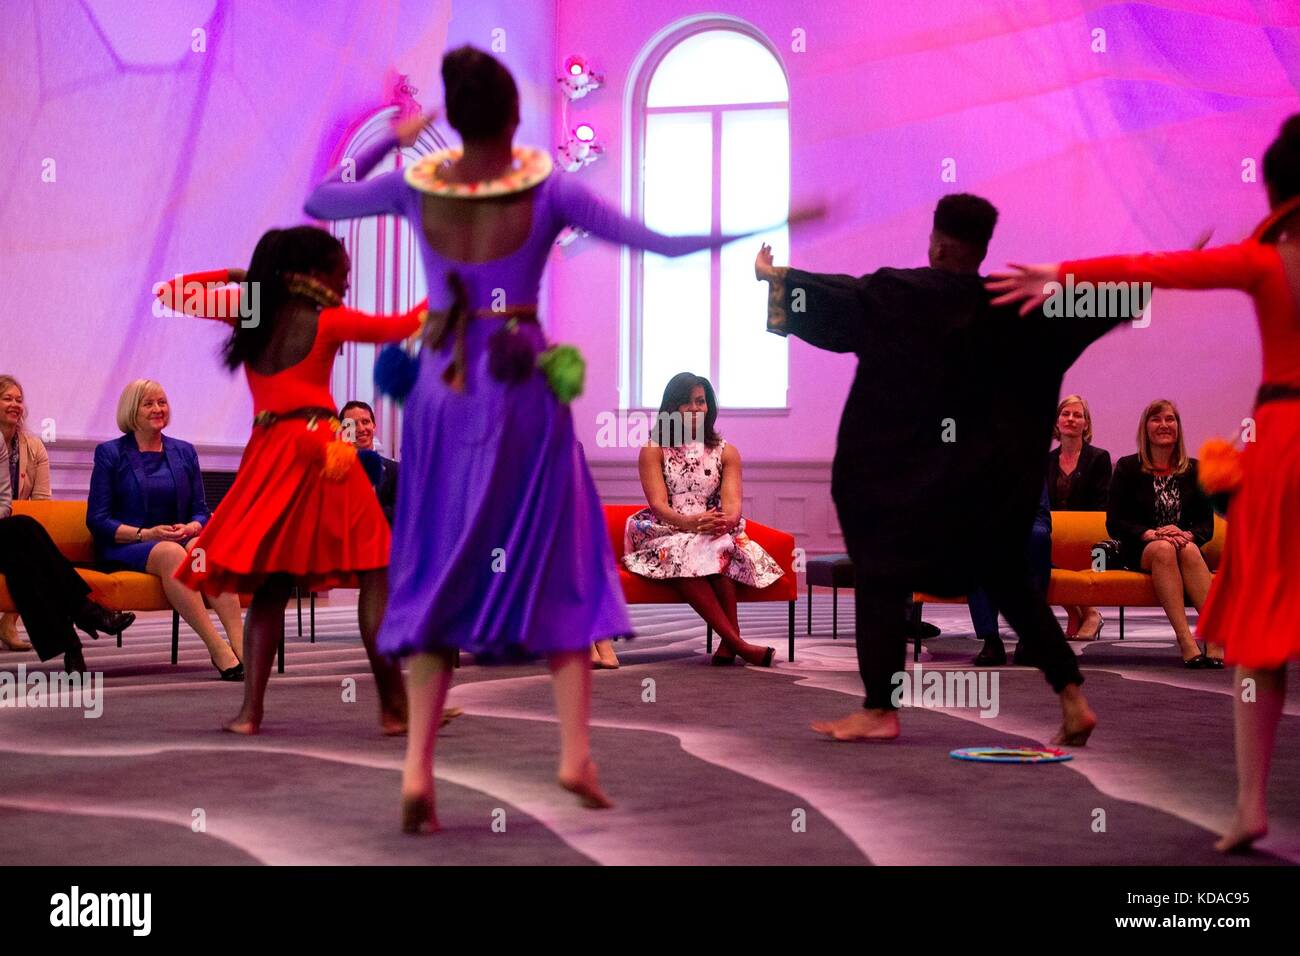 L'école élémentaire de Savoie et les étudiants du programme arts d'exécuter une danse de première dame des États-Unis Michelle Obama au Smithsonian American Art Museum renwick gallery 13 mai 2016 à Washington, DC. Banque D'Images